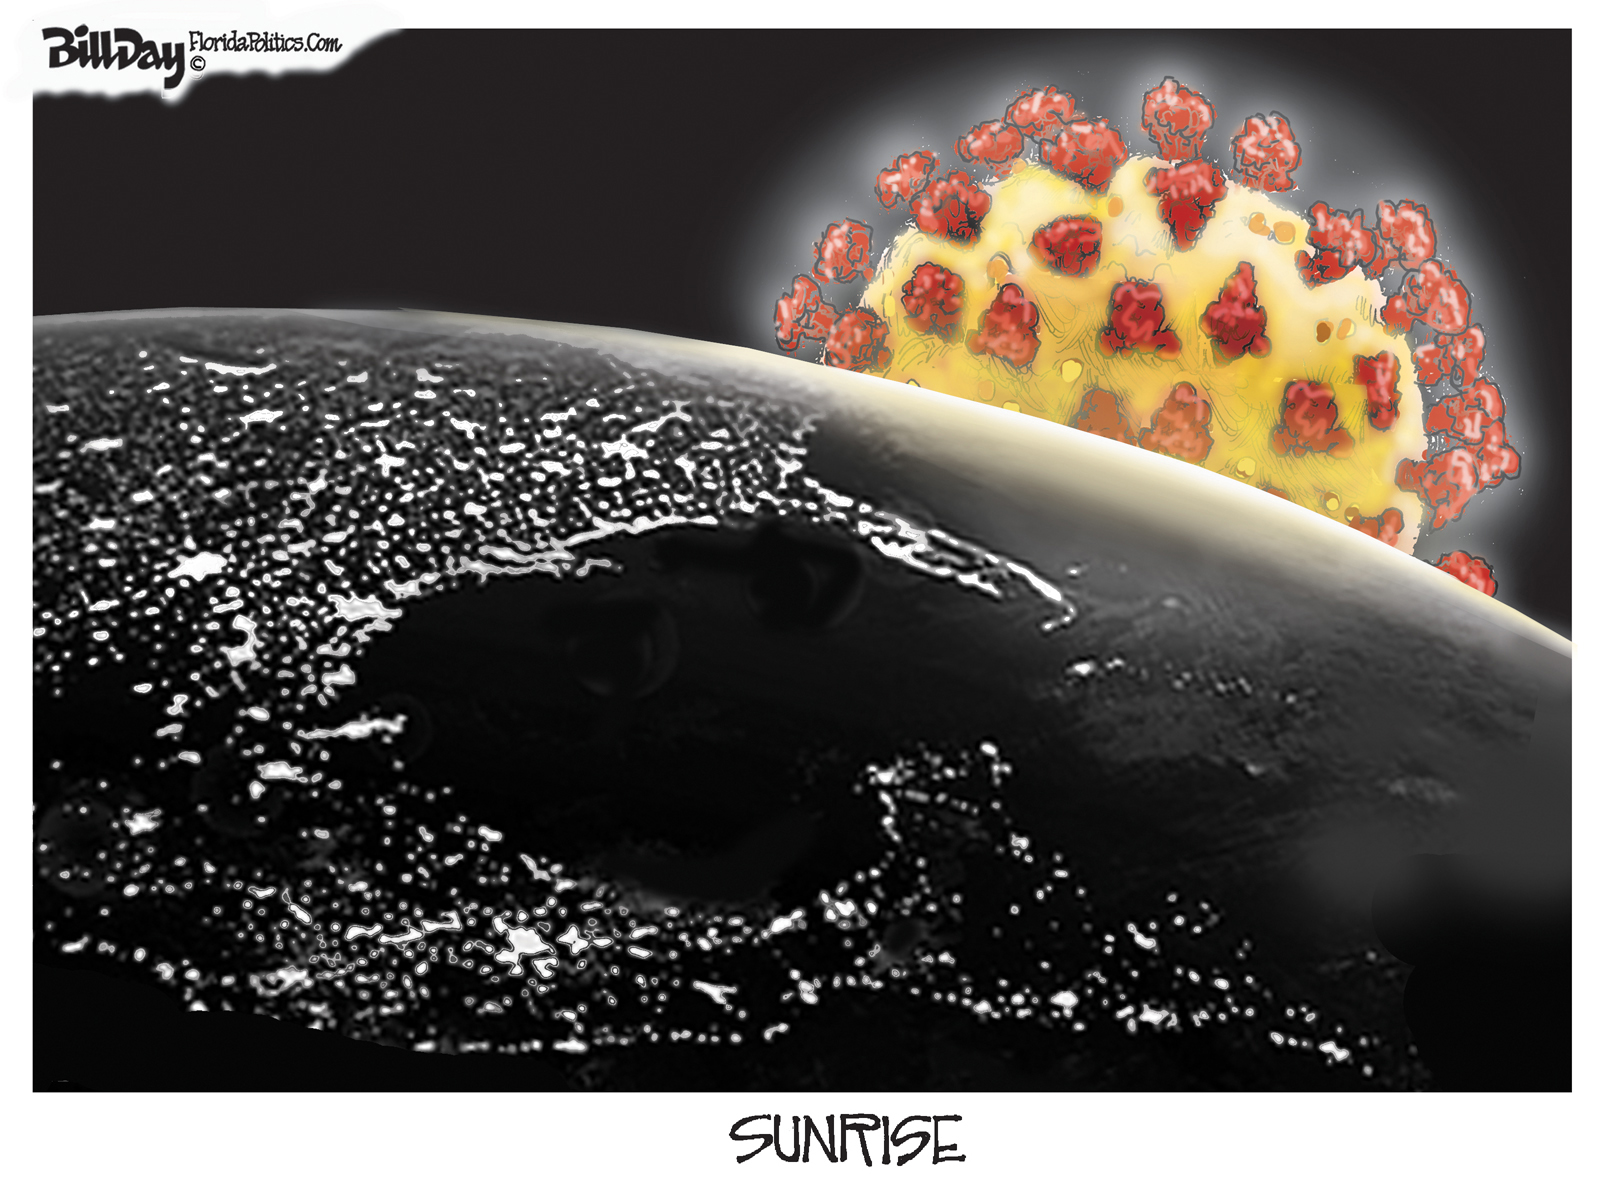 Sunrise, A Cartoon By Award-Winning Bill Day